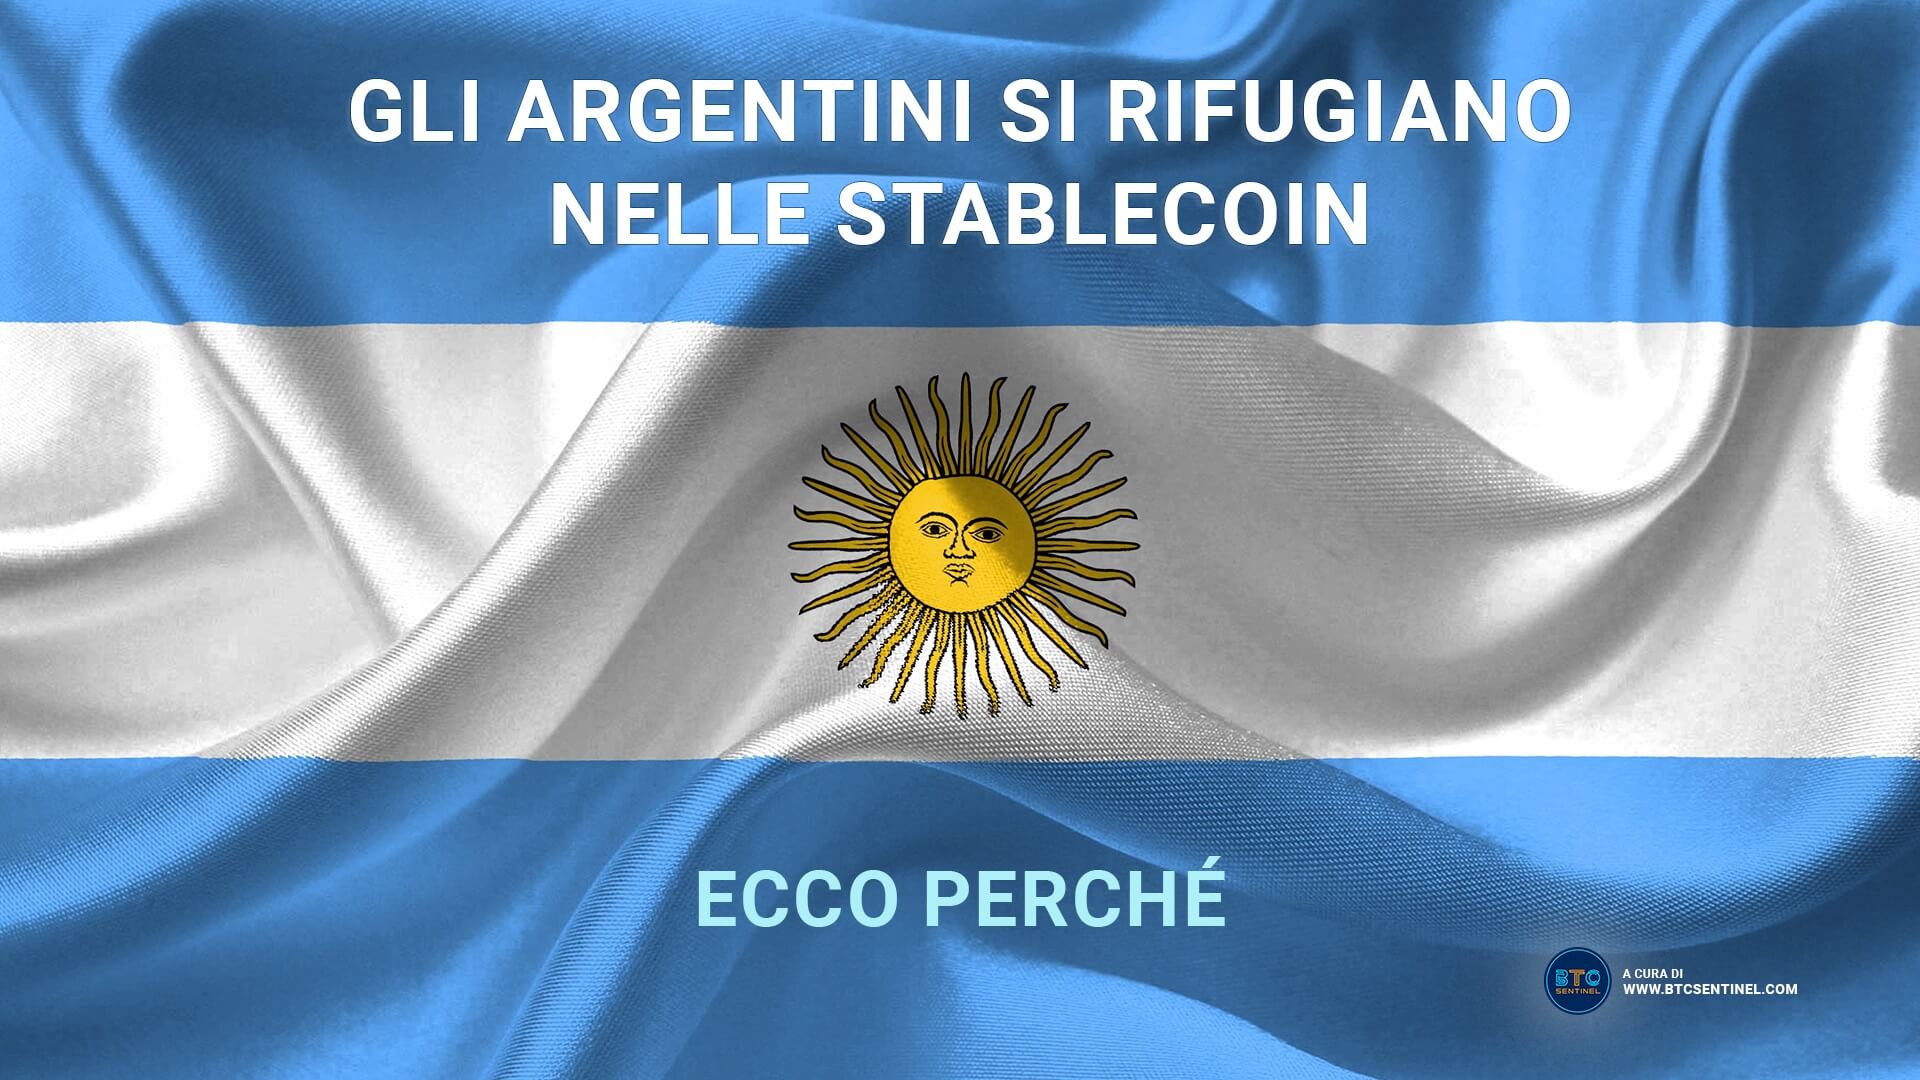 Gli argentini si rifugiano nelle stablecoin dopo le dimissioni del Ministro dell'Economia